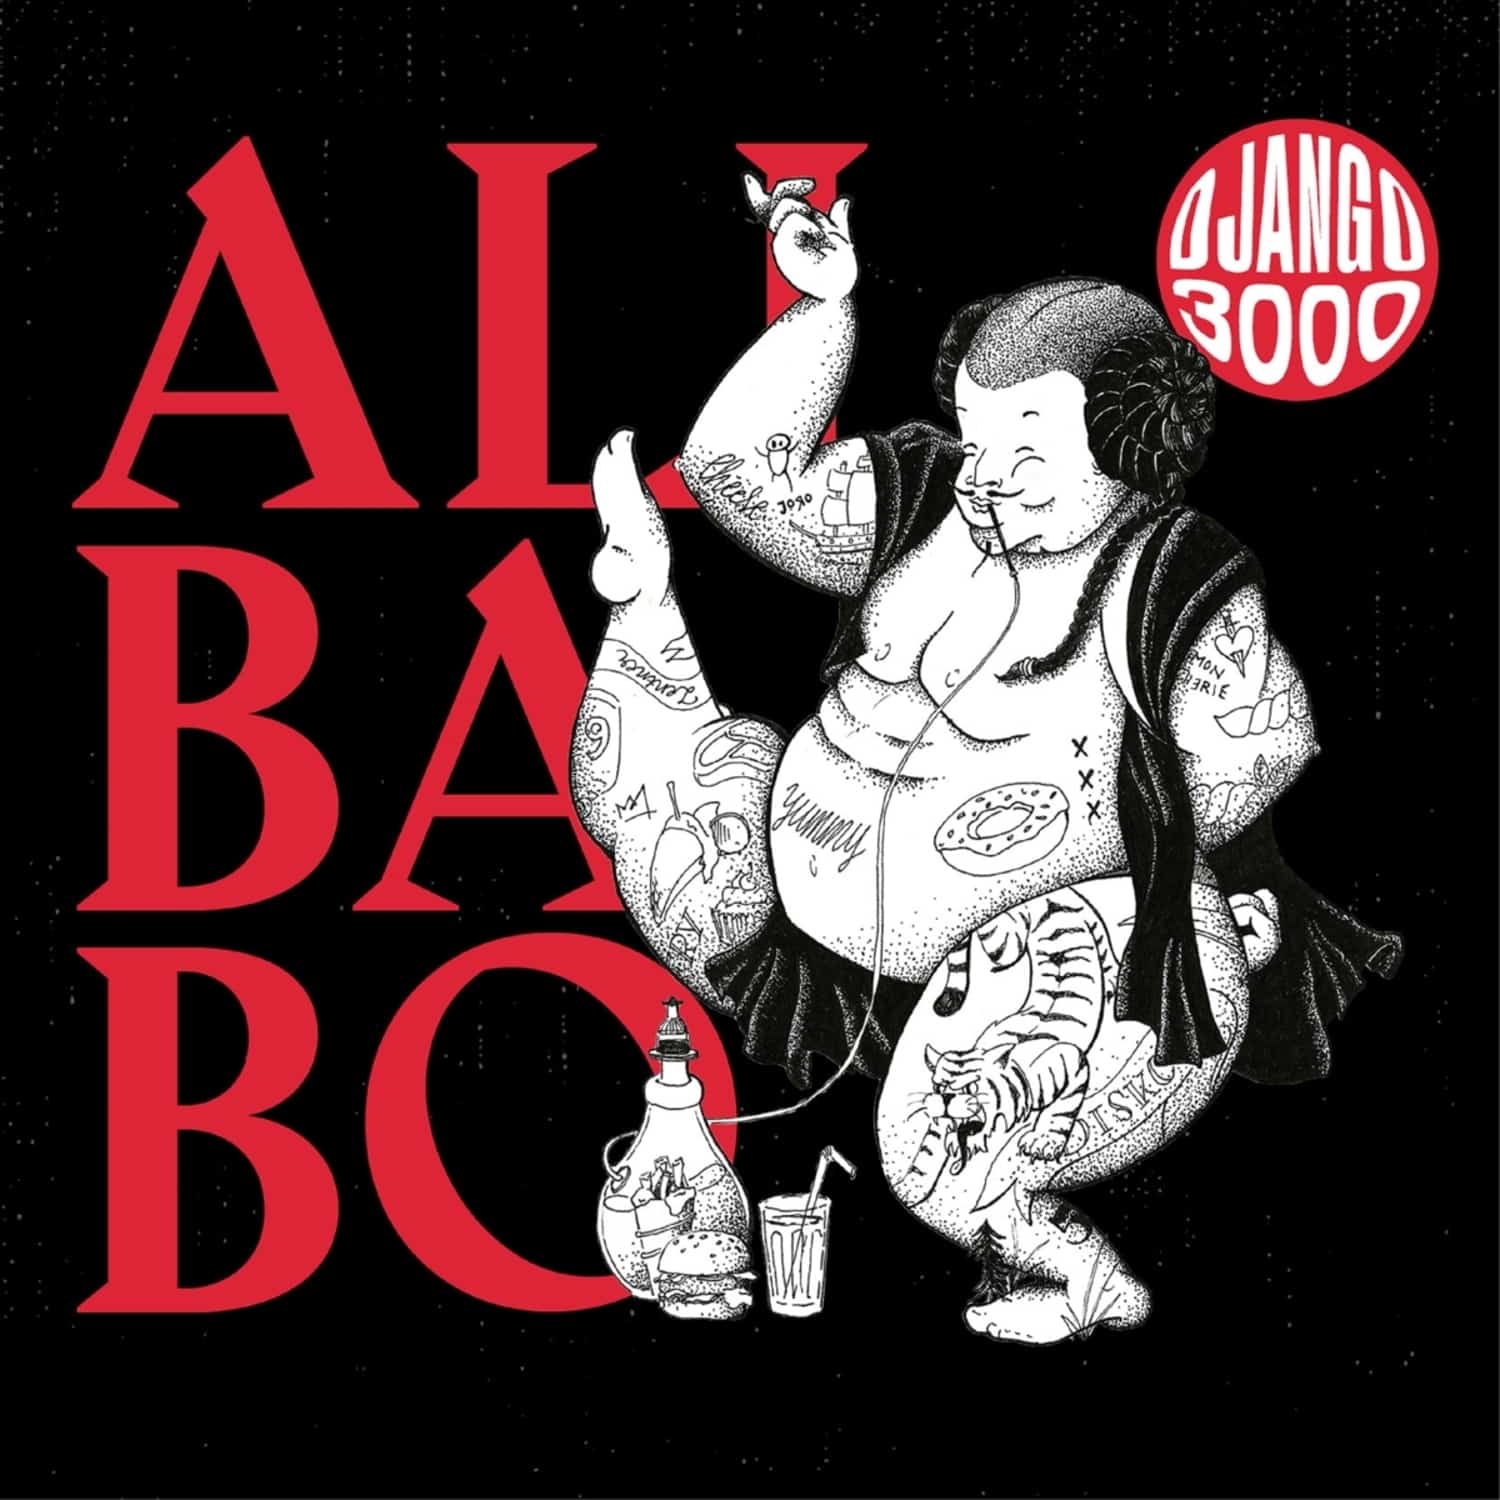 Django 3000 - ALIBABO 